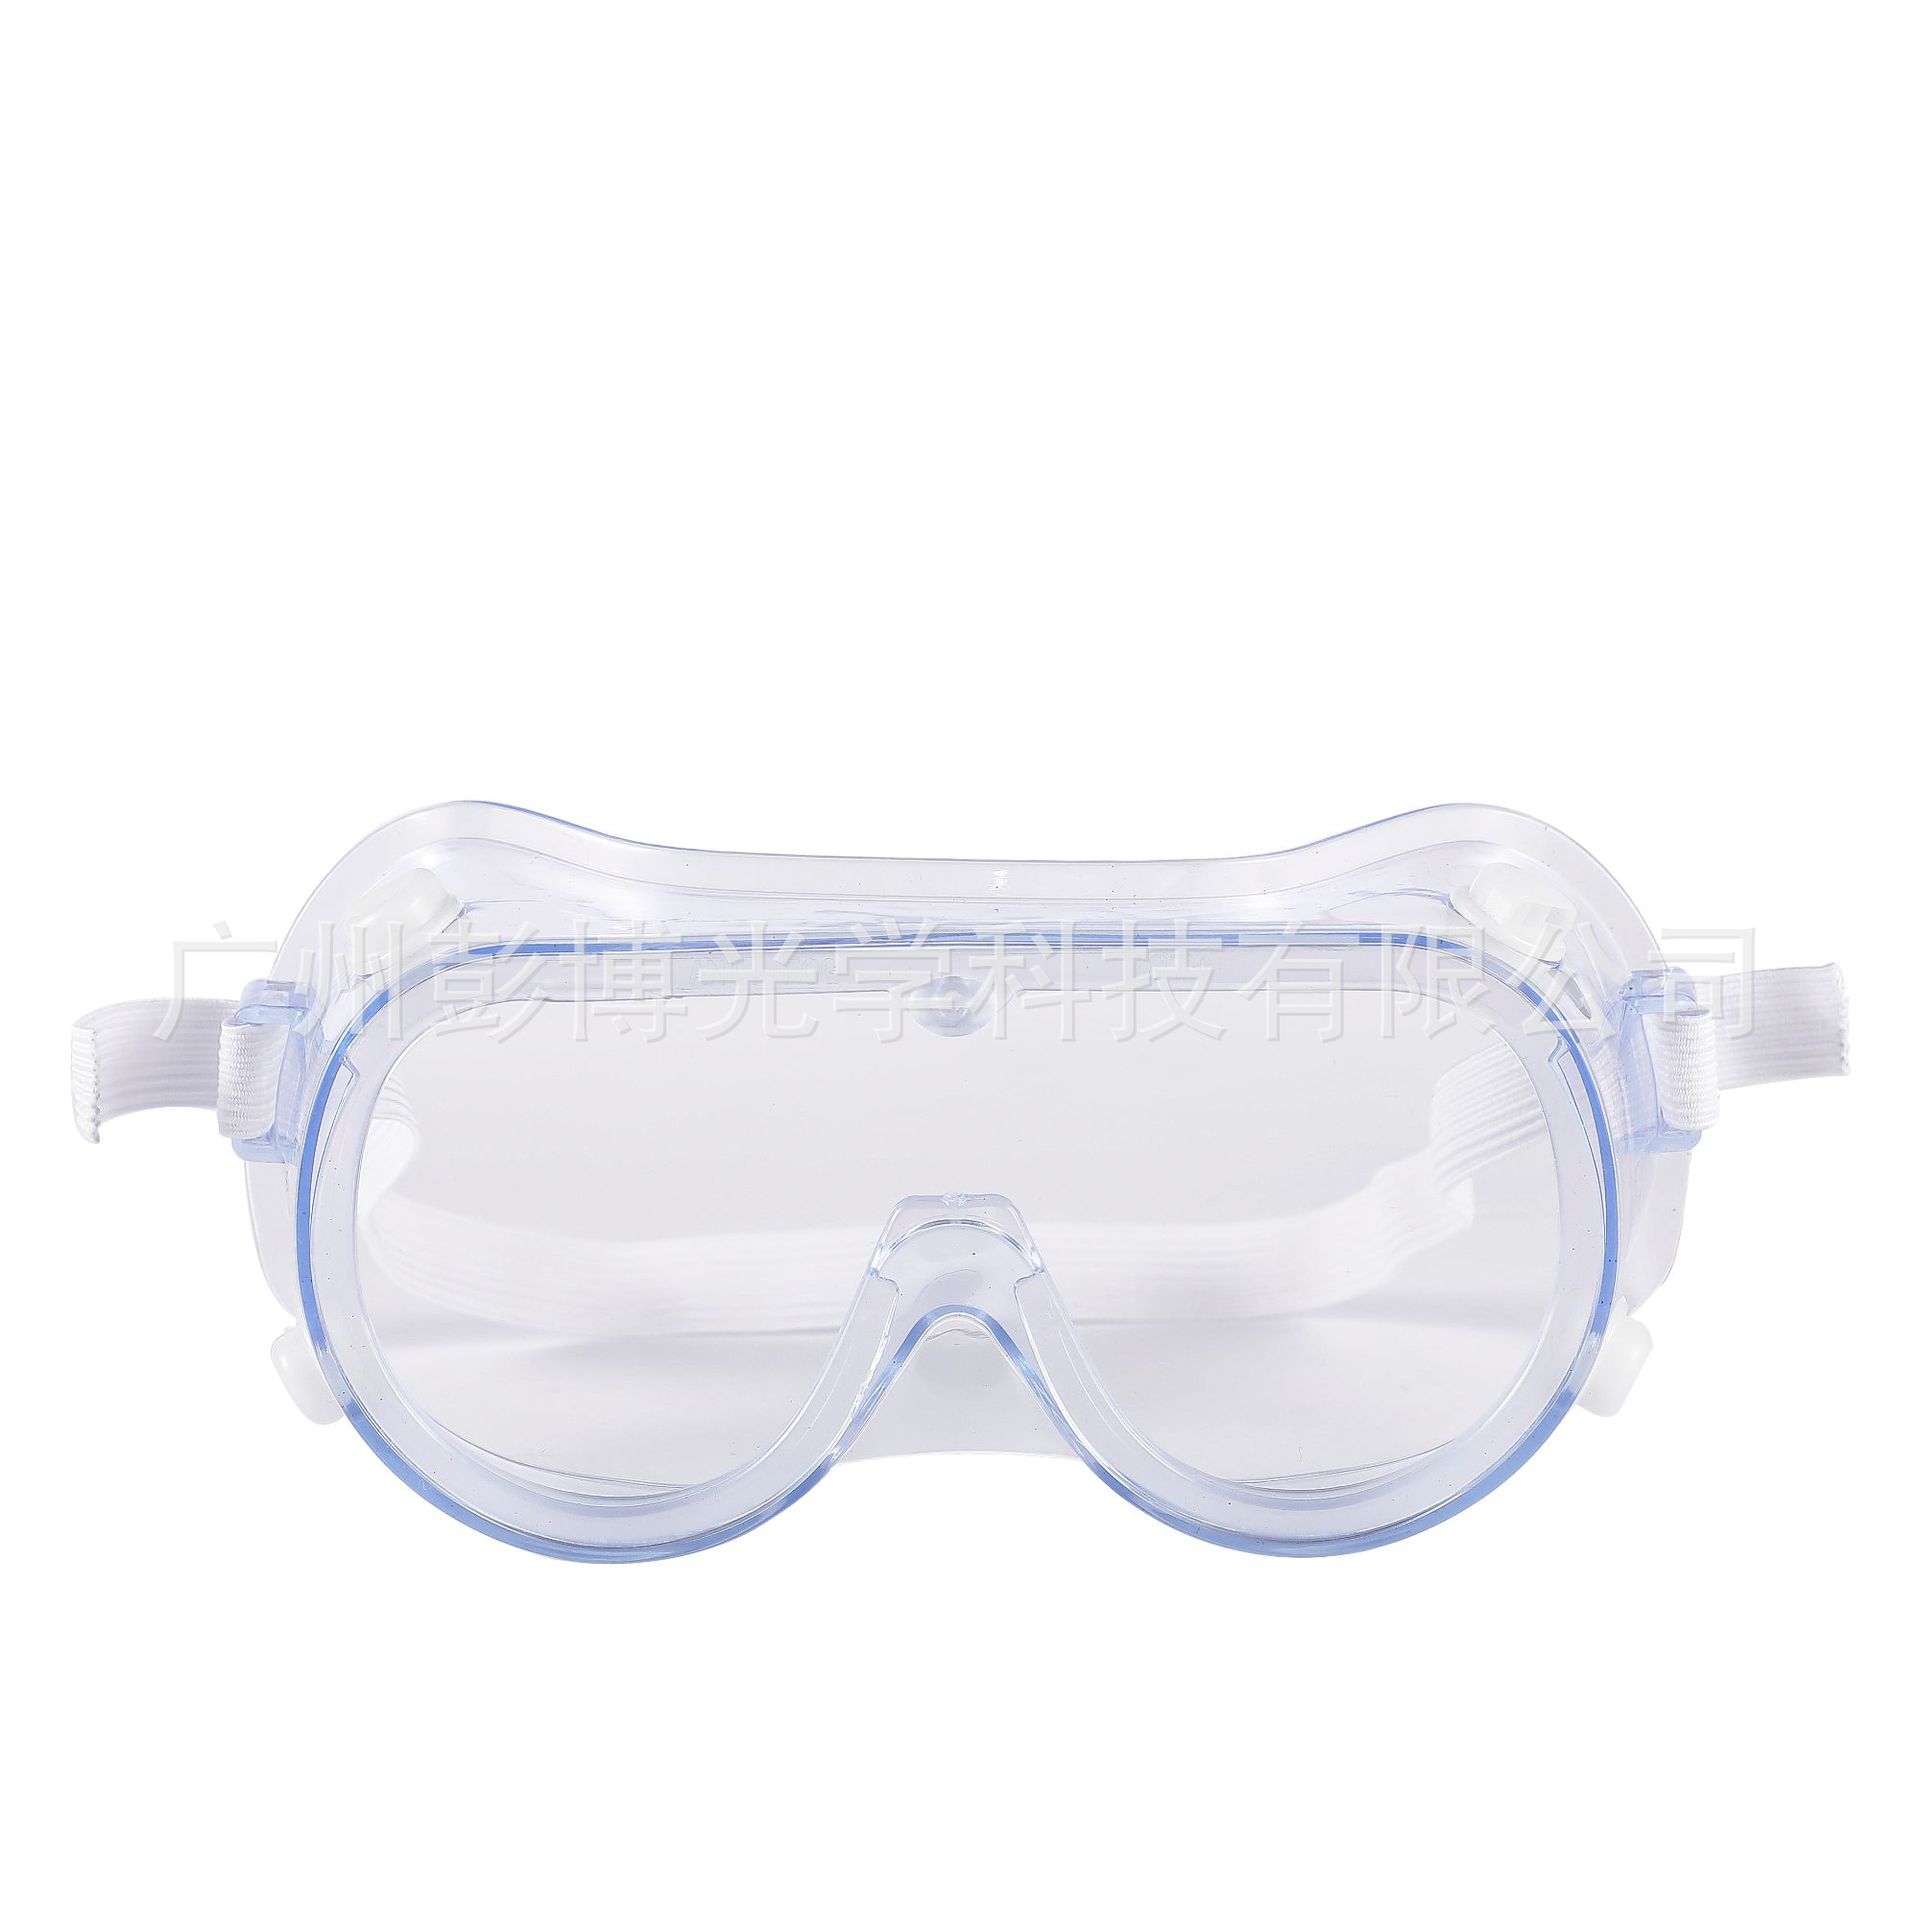 Hot Hot Hot Eye Protection Protection Safety ركوب نظارات نظارات مختبر مختبر منع الرمال نظارات في الهواء الطلق